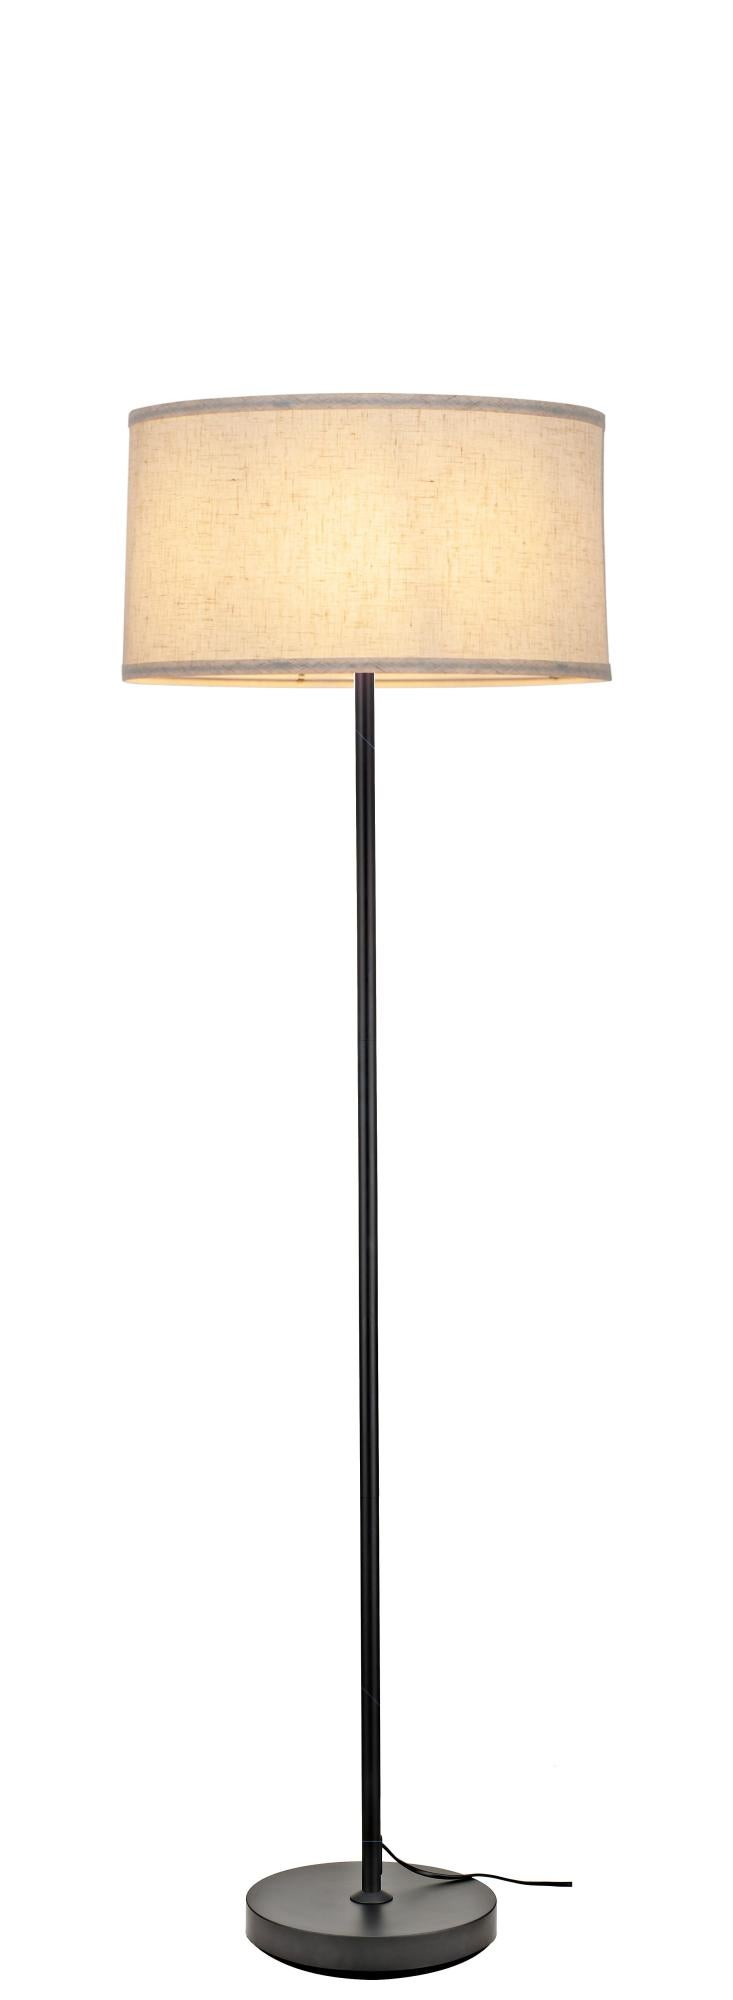 Lámpara de pie lino e27 natural y negro 150 cm alto